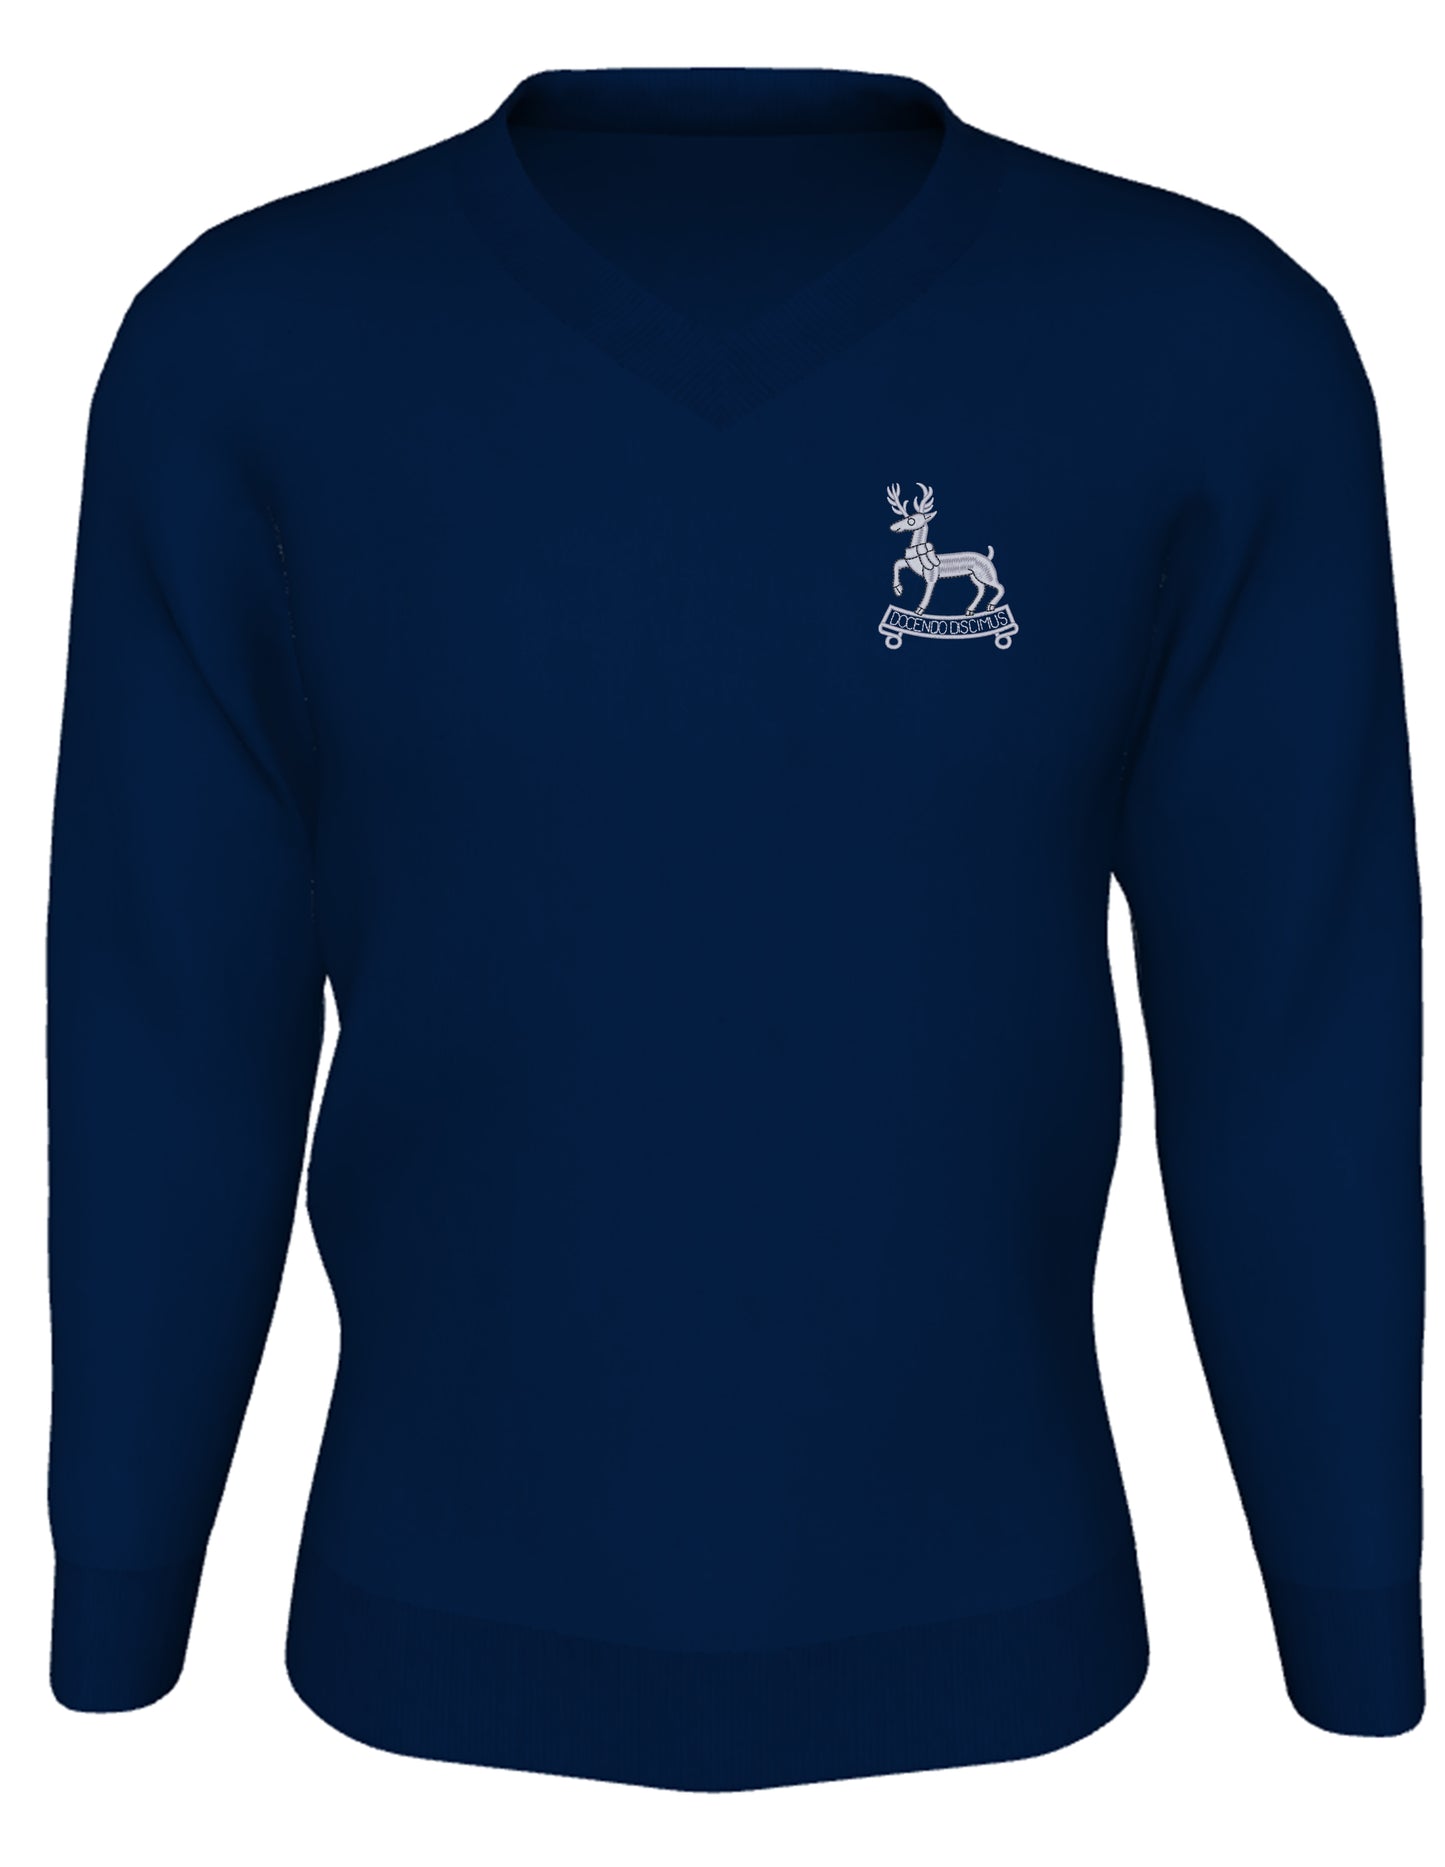 Gillingham School - Dark Navy - Knitted Jumper School Uniform